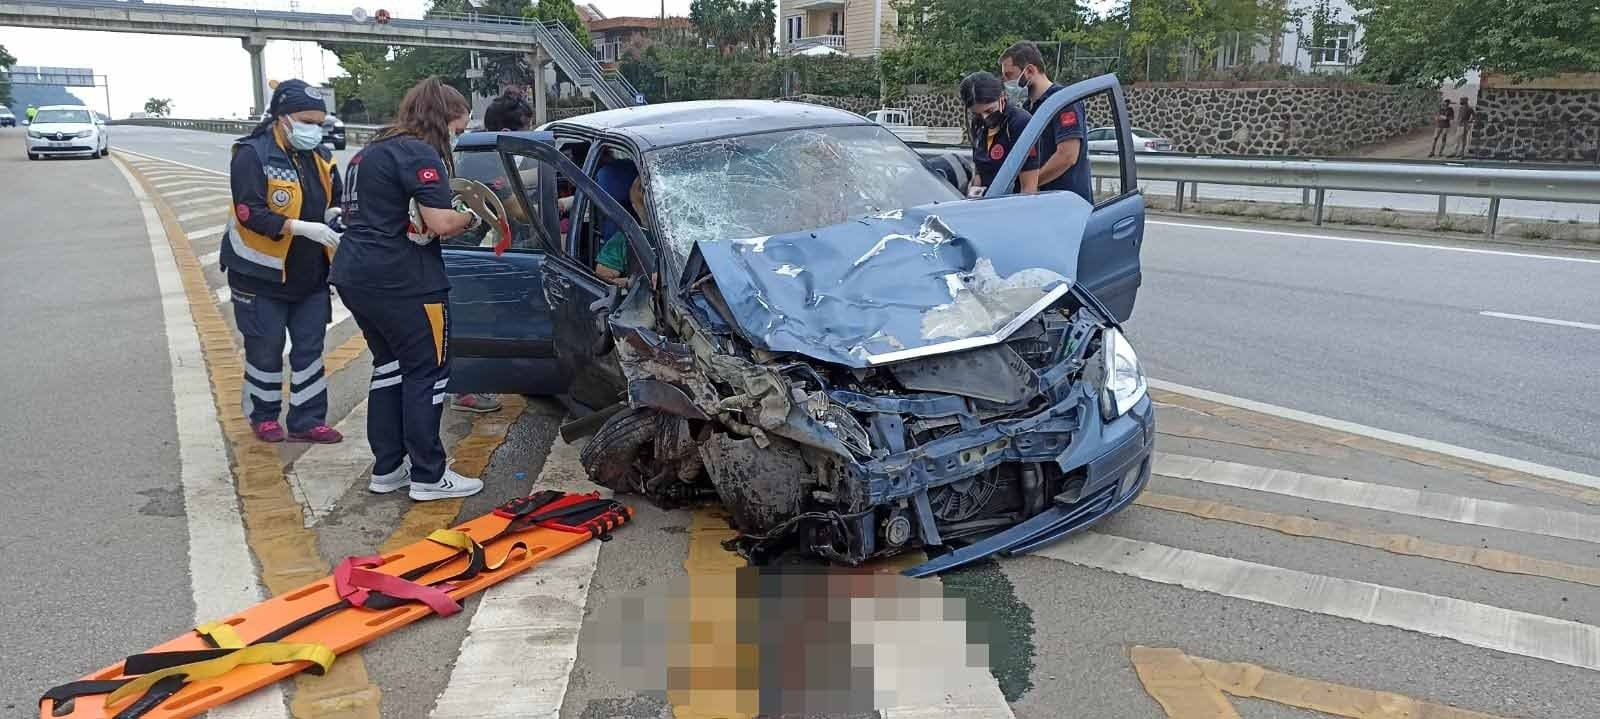 Trabzon’da meydana gelen kazada 1 kişi öldü, 3 kişi yaralandı